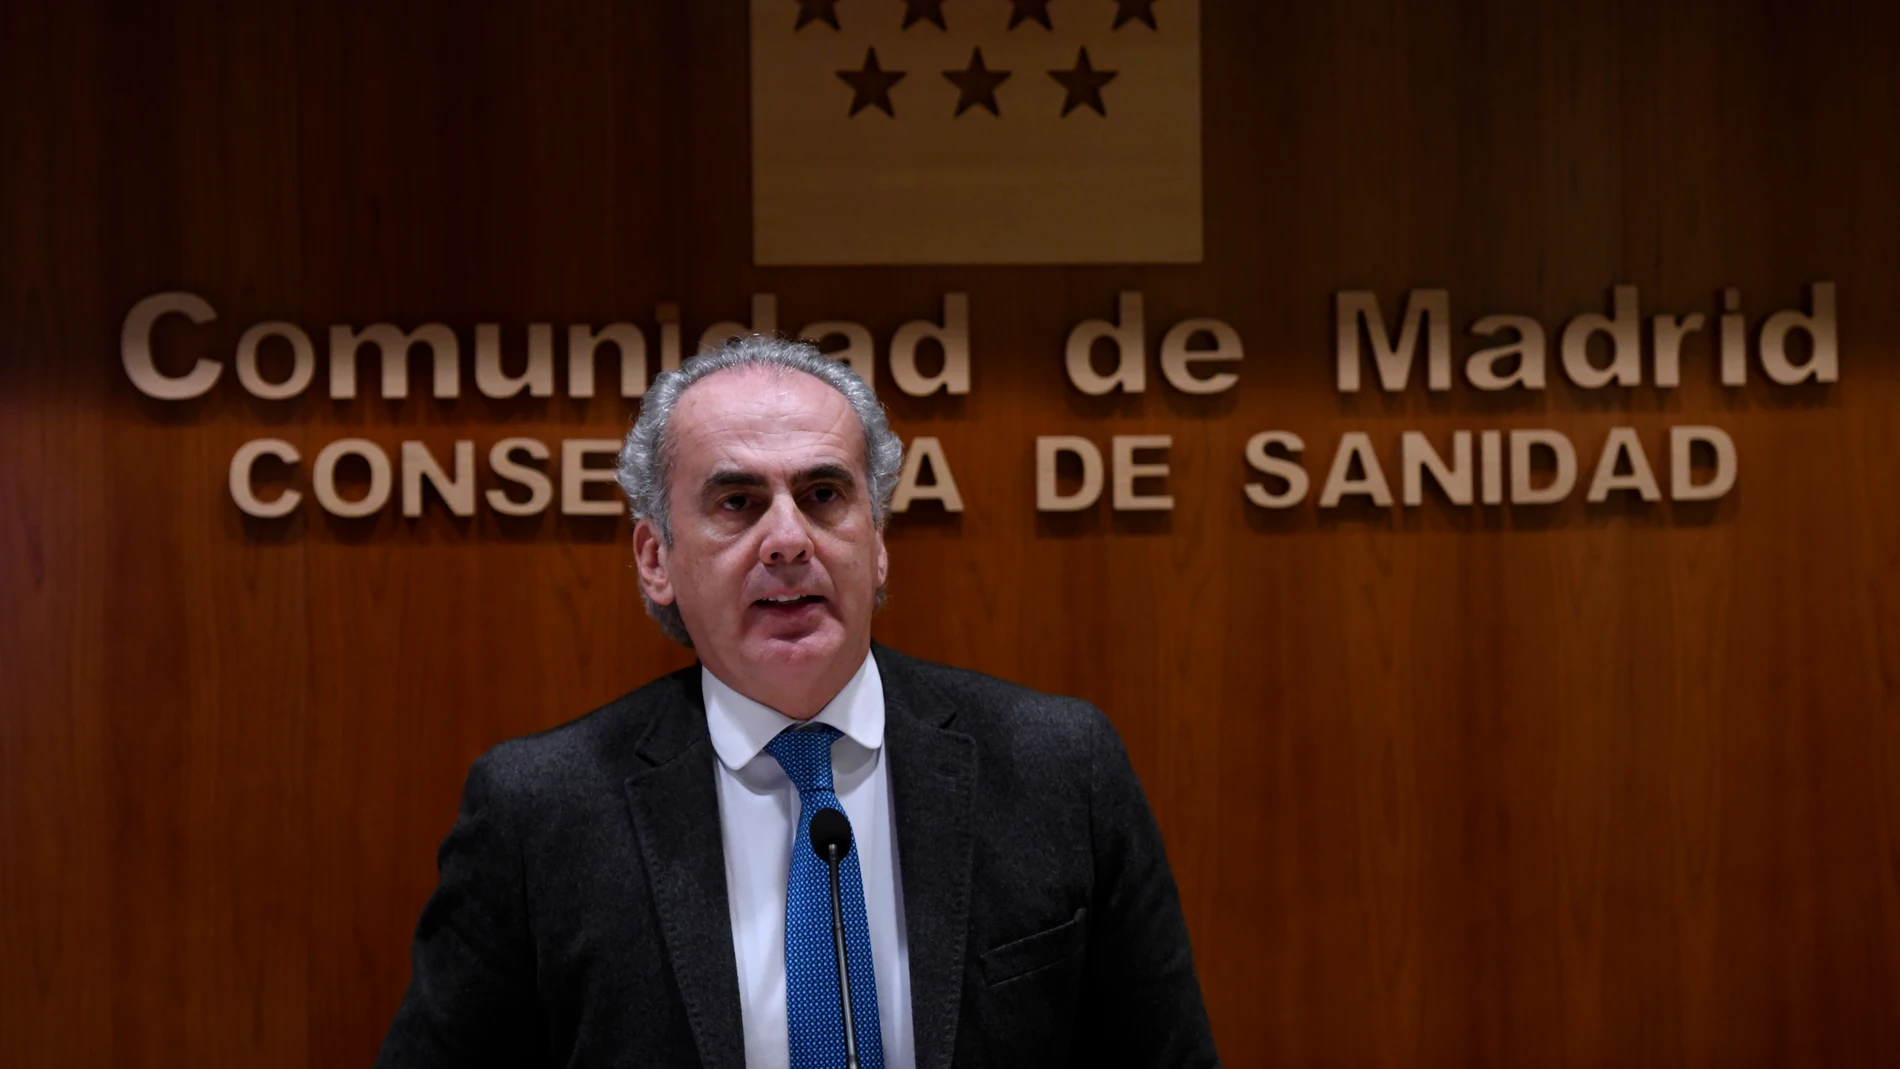 El consejero de Sanidad de la Comunidad de Madrid, Enrique Ruiz Escudero, durante una rueda de prensa para actualizar la información epidemiológica y asistencial por coronavirus en la región